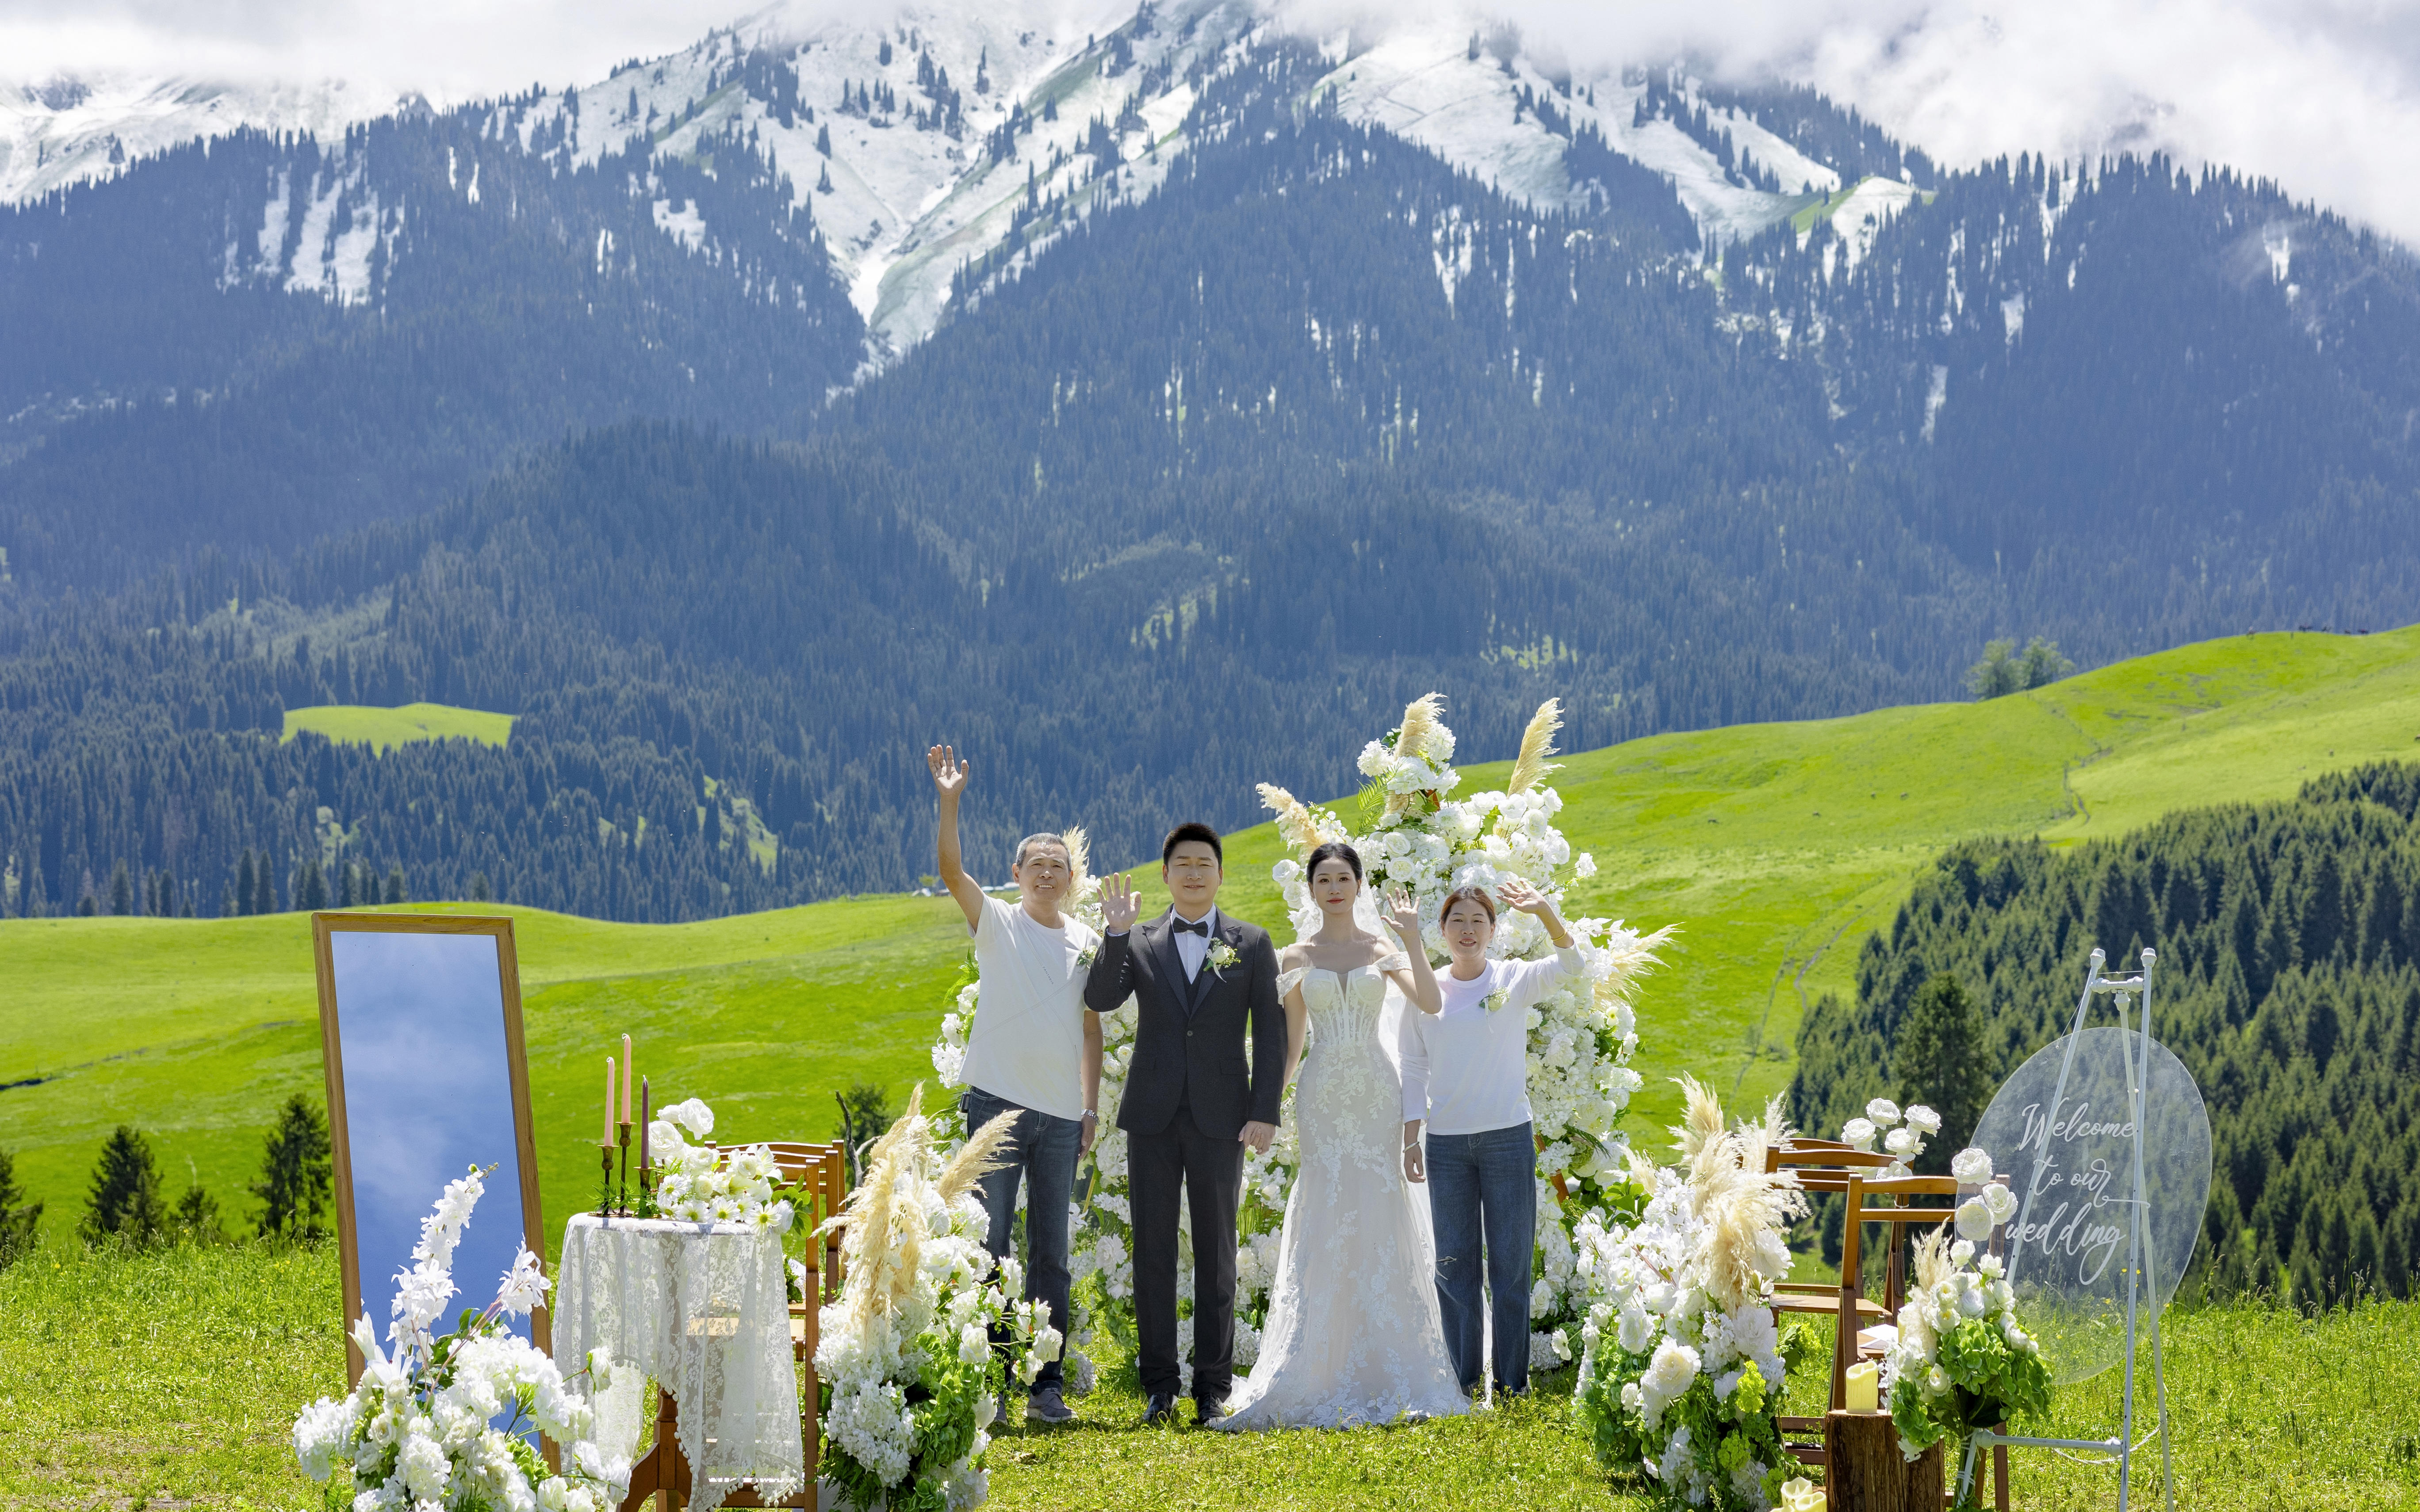 『恰西草原』在雪山的见证下步入婚姻